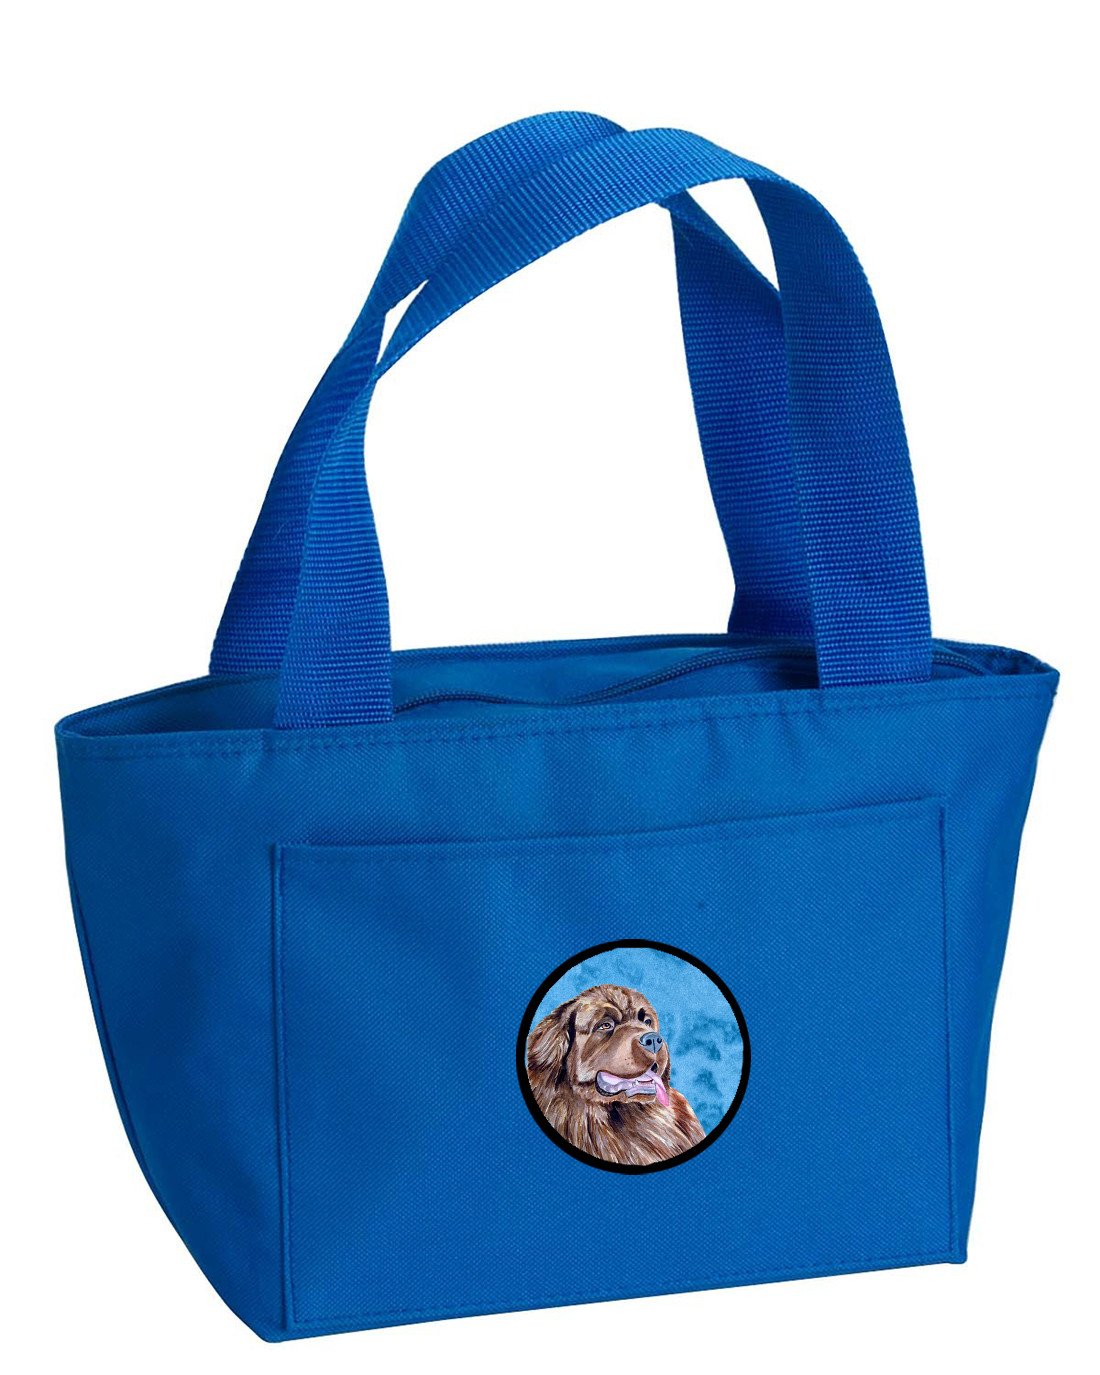 Blue Newfoundland  Lunch Bag or Doggie Bag LH9354BU by Caroline's Treasures